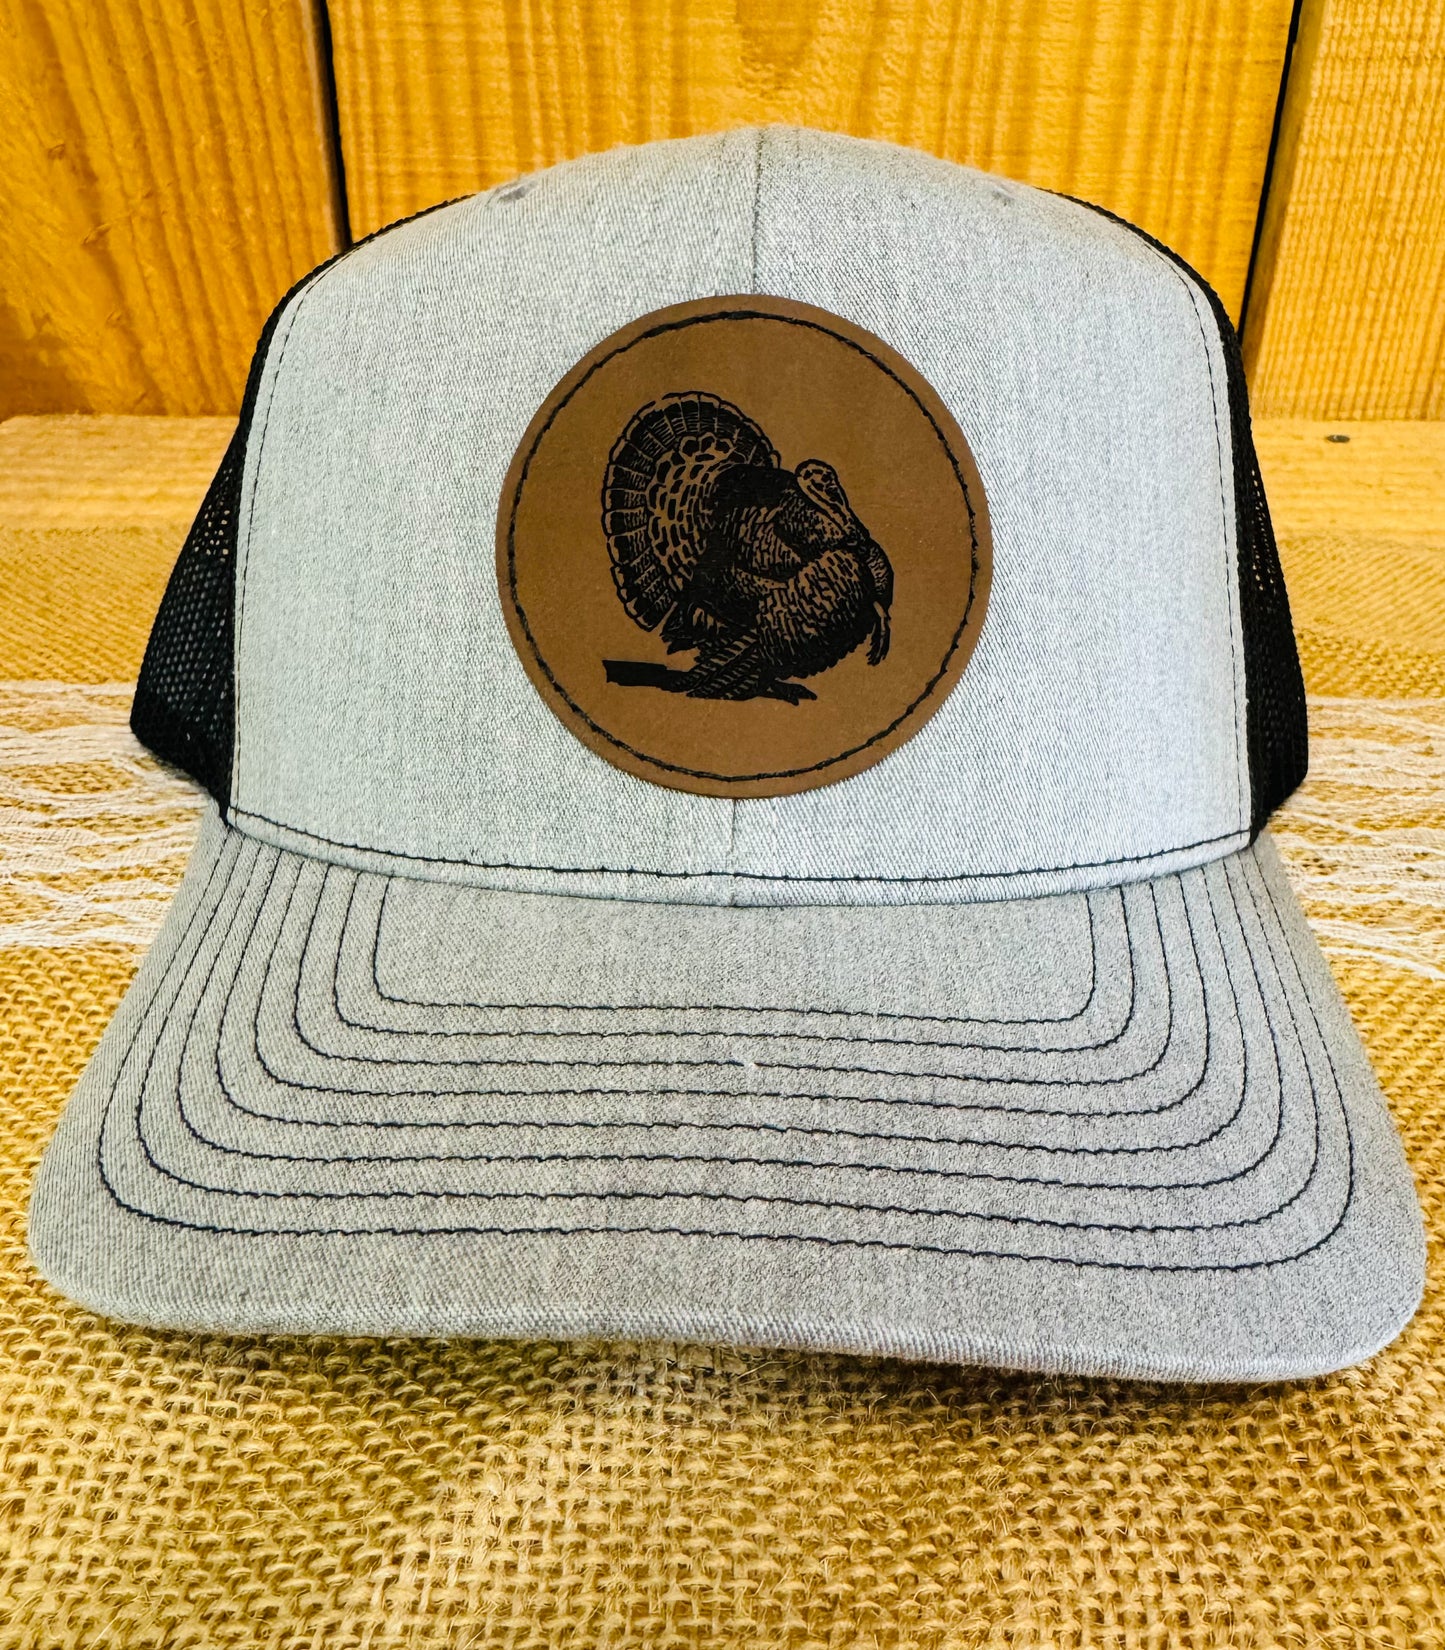 Turkey Trucker Hat